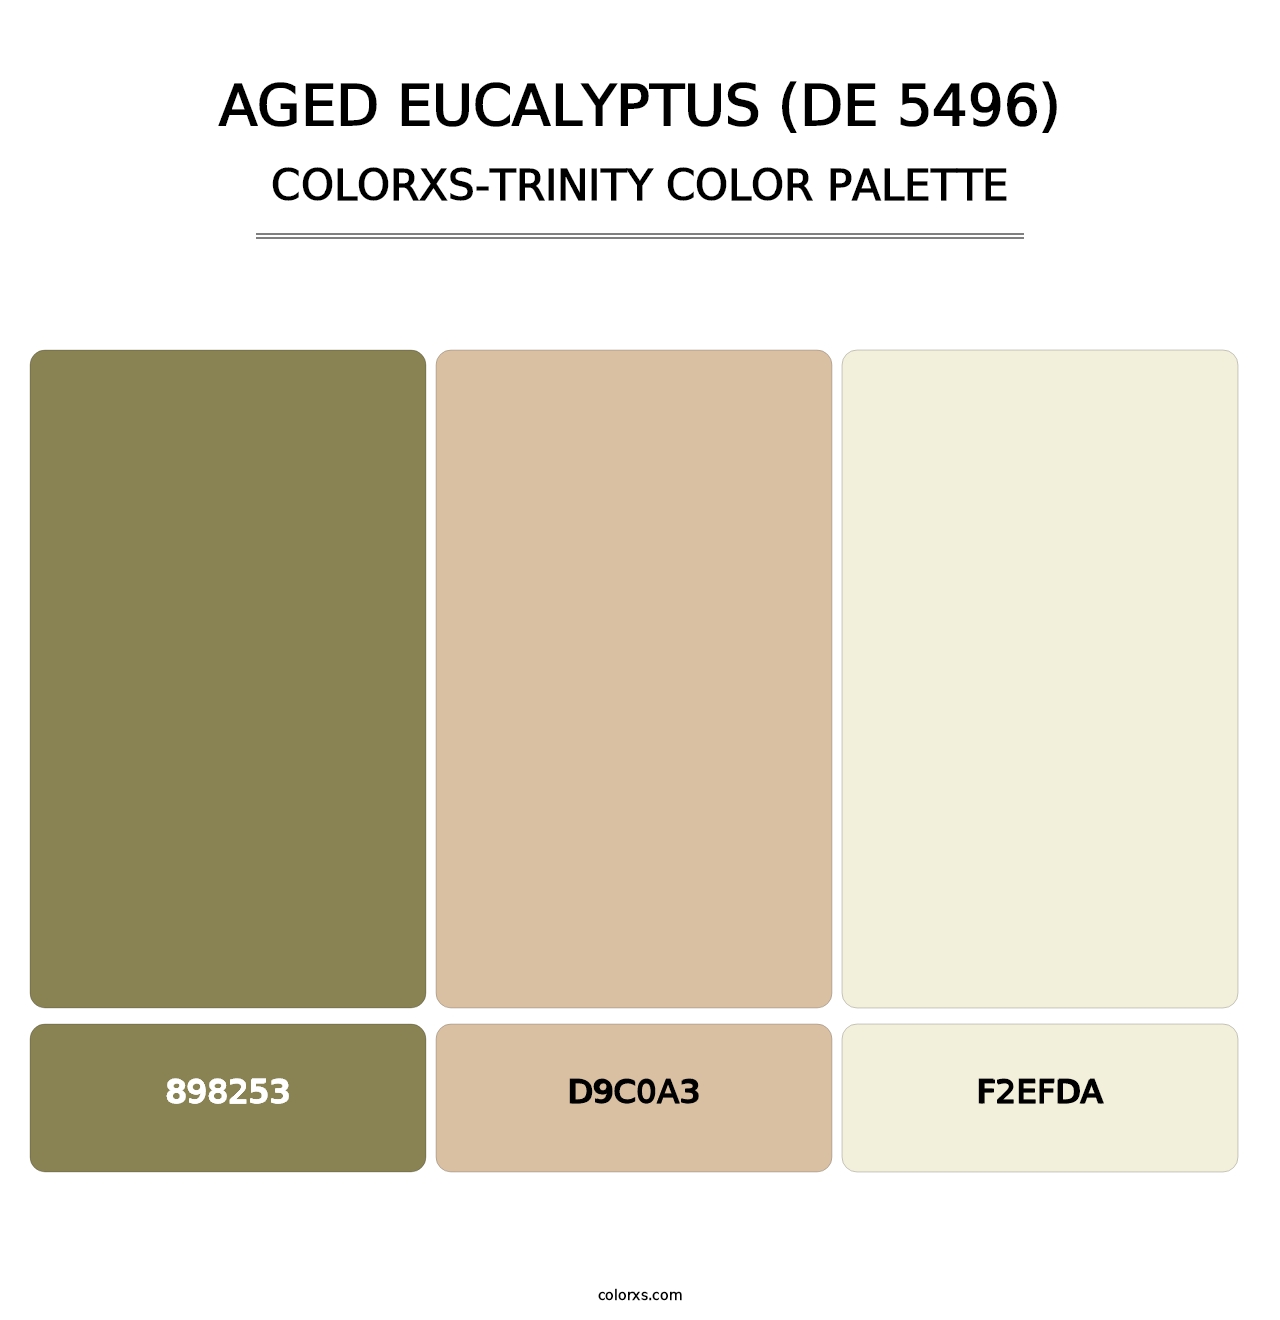 Aged Eucalyptus (DE 5496) - Colorxs Trinity Palette